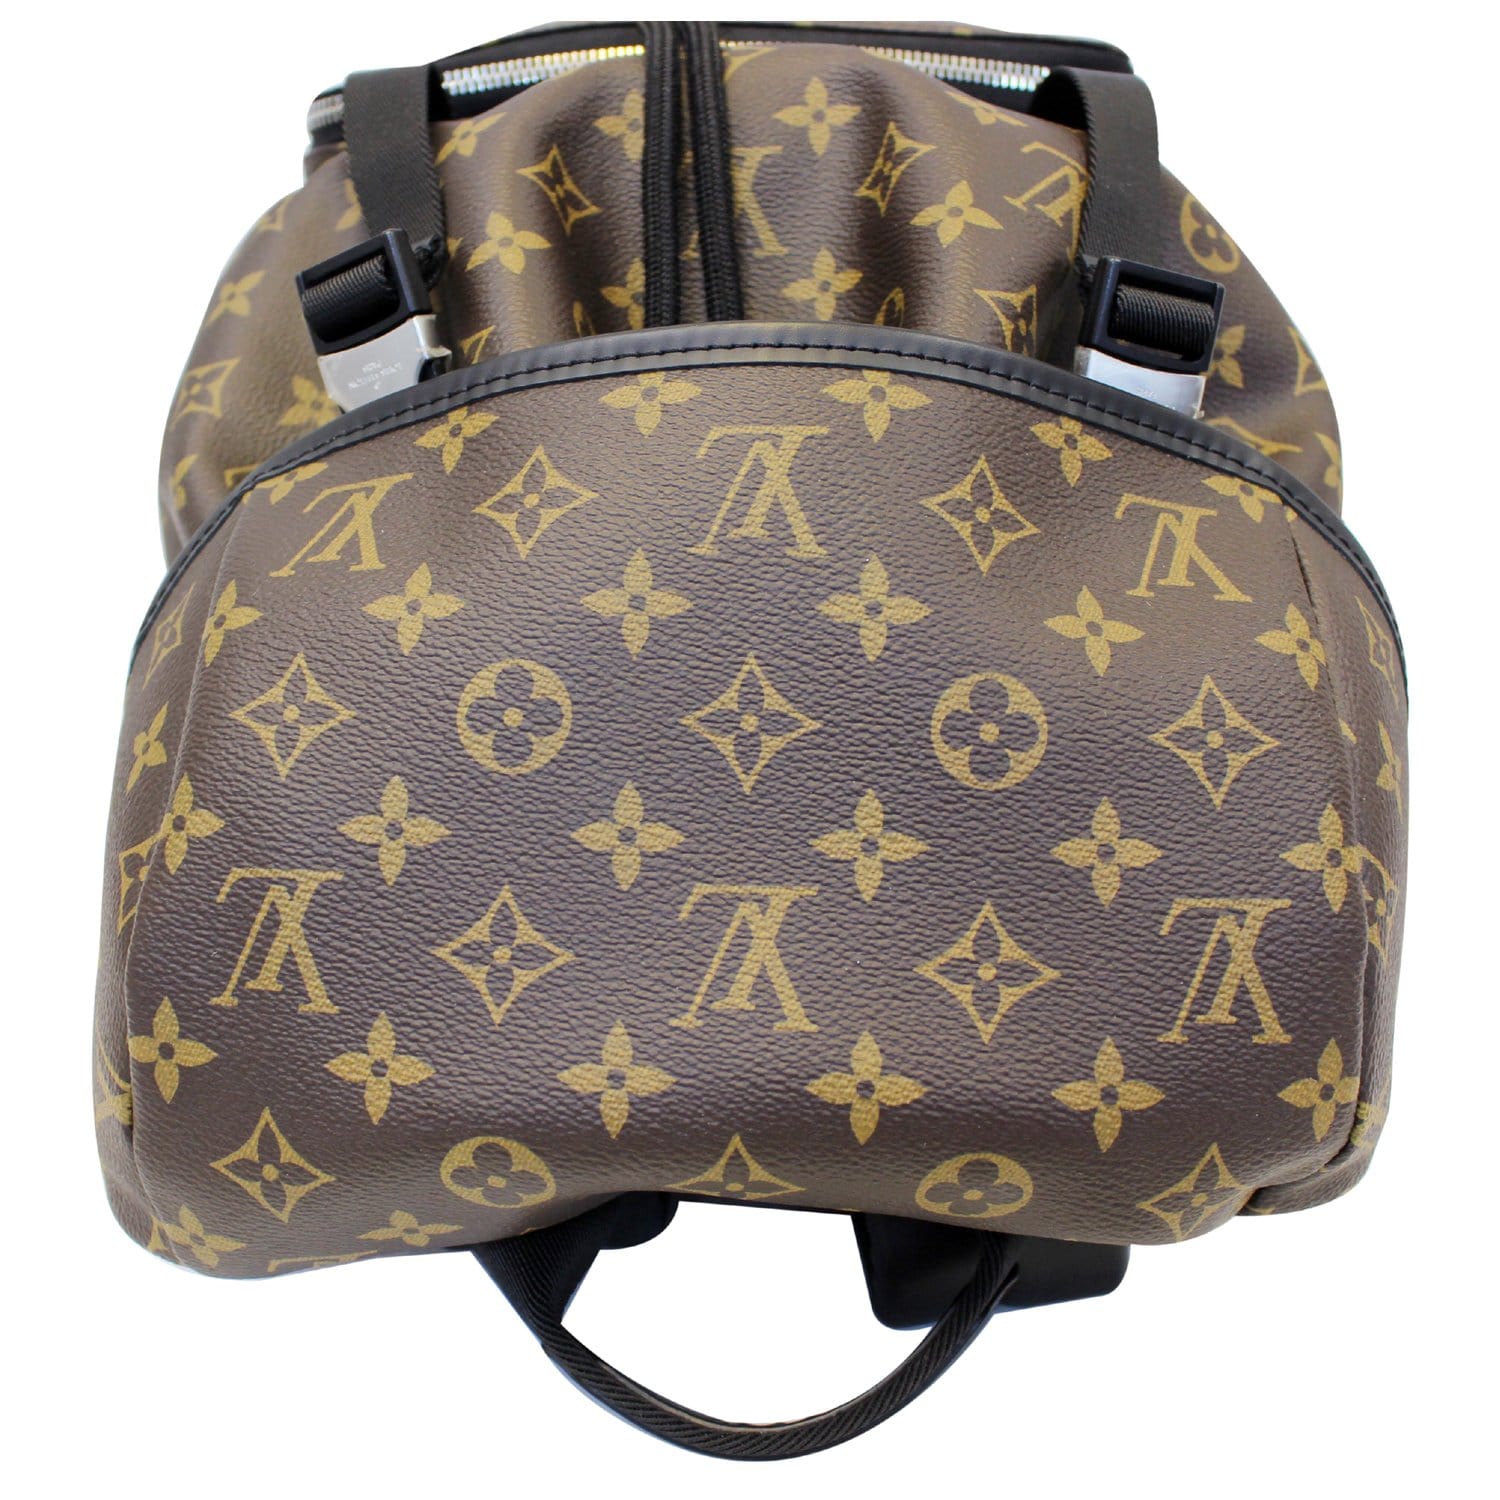 Men's Louis-Vuitton Zack Monogram Macassar Backpack Brown